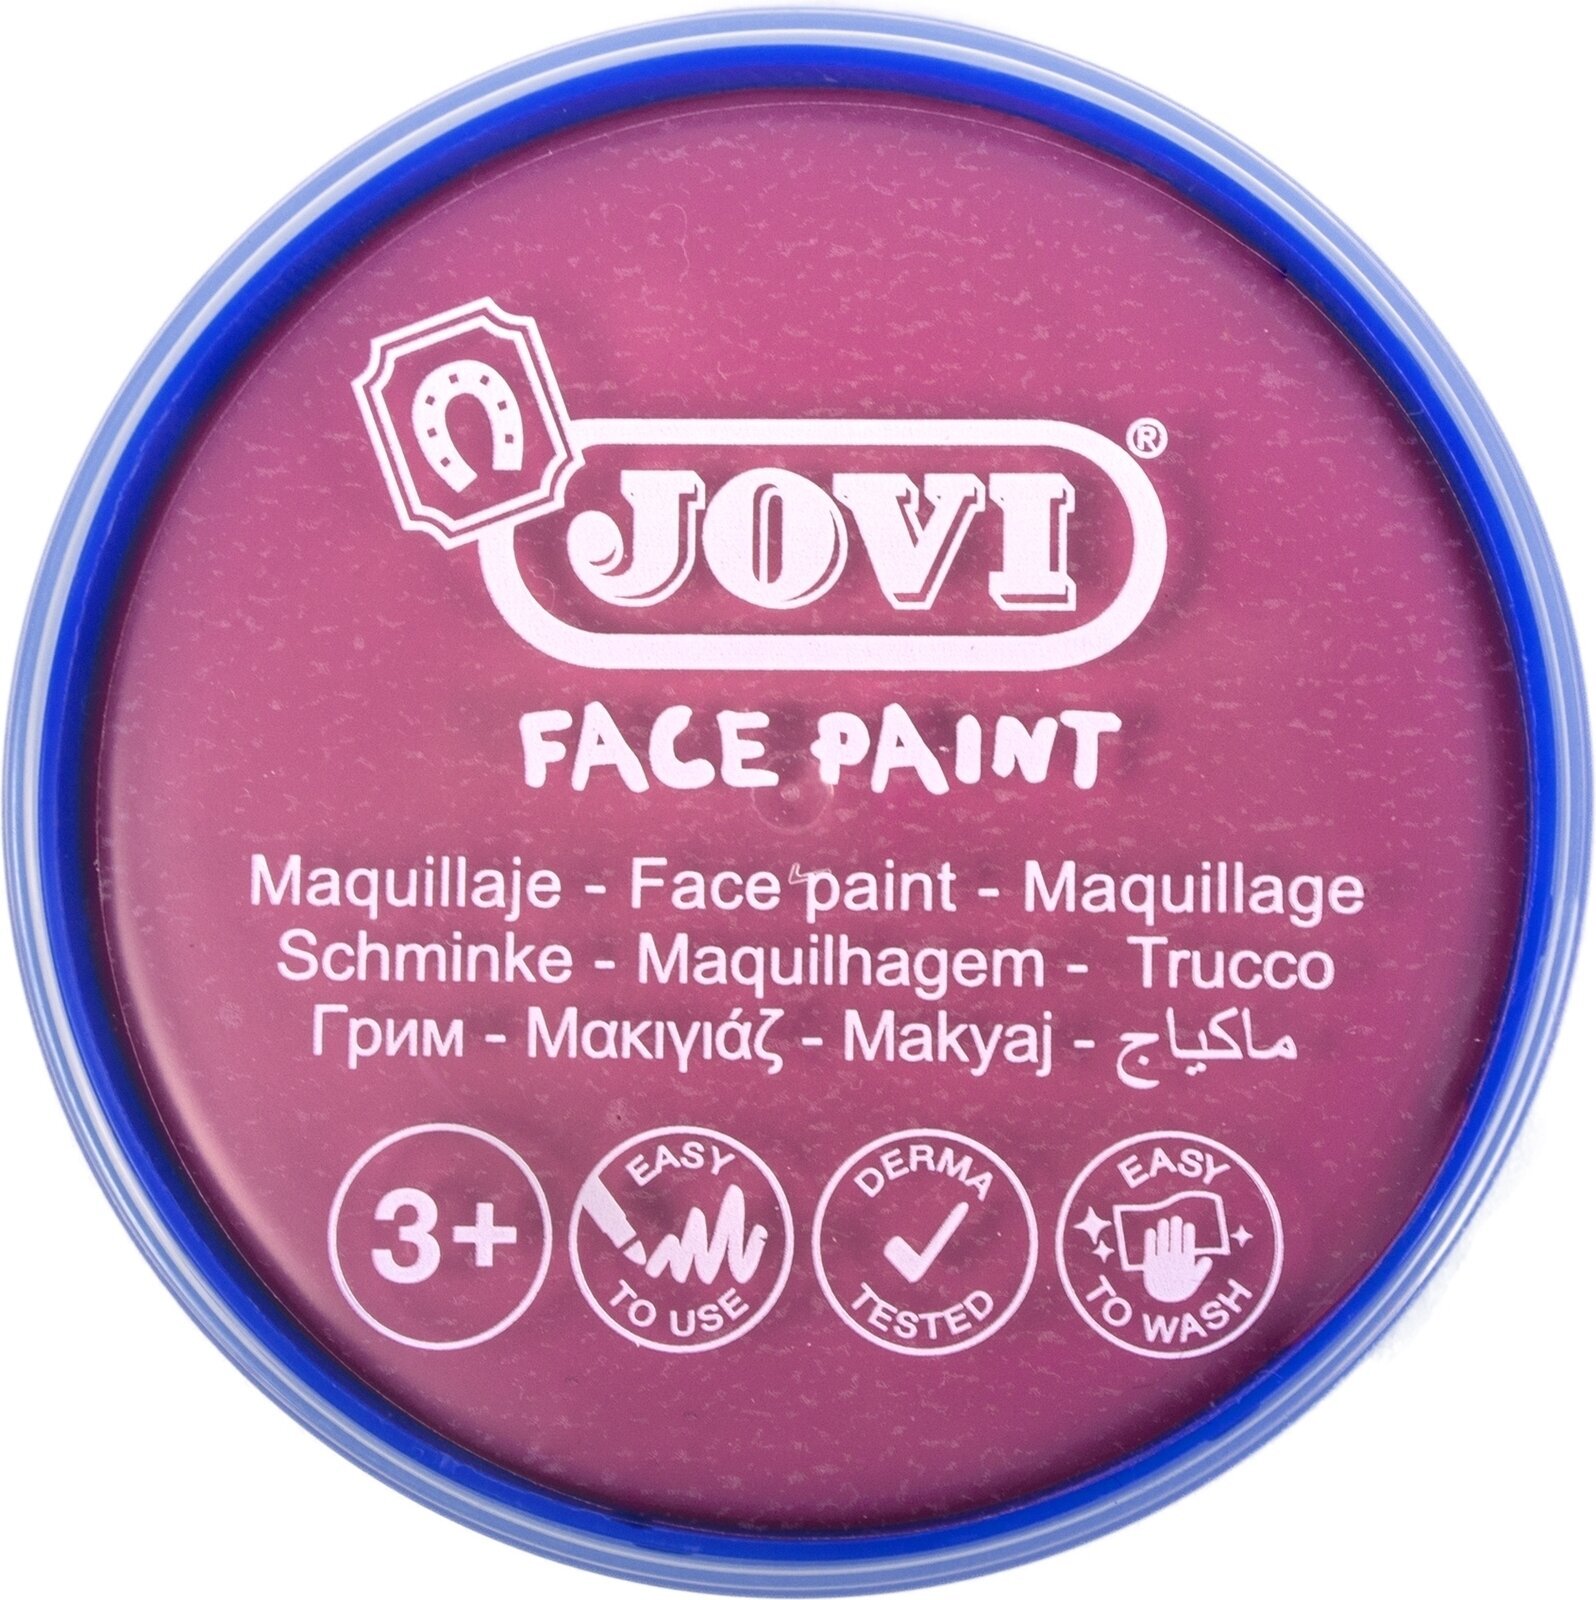 Face Paint Jovi Face Paint Pink 8 ml